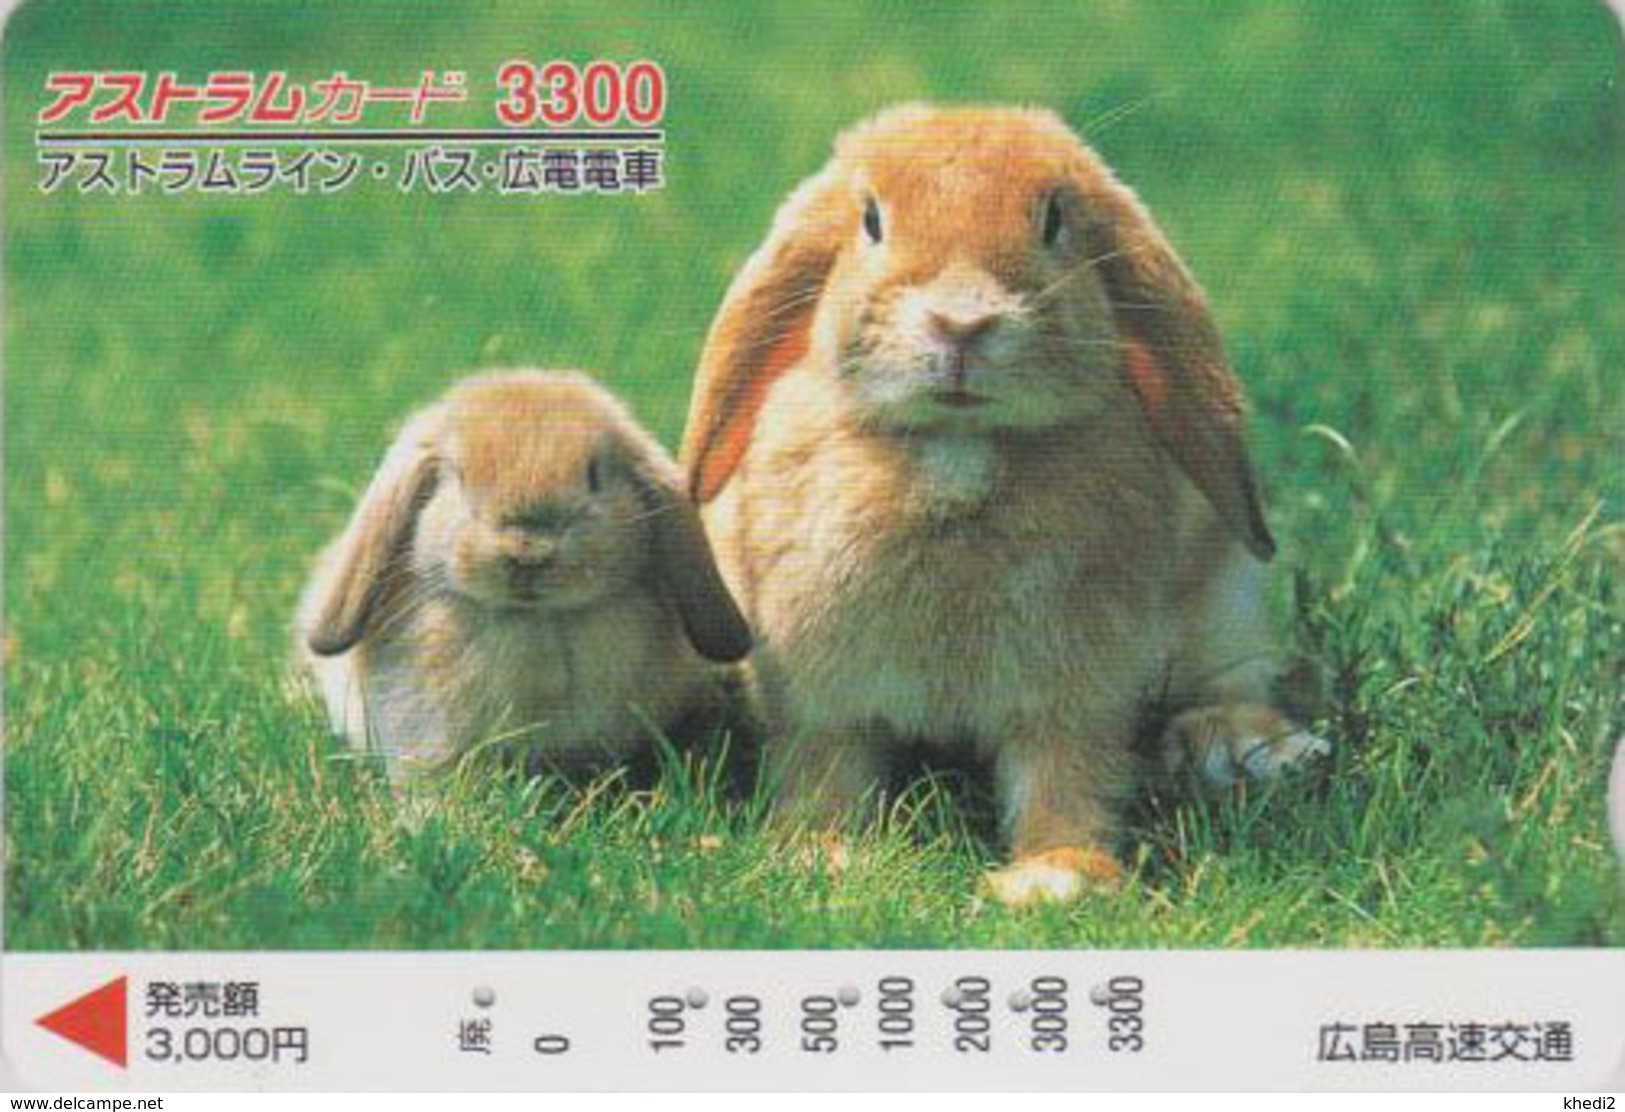 Carte Japon - ANIMAL - LAPIN & Bébé Lapereau 3300 - RABBIT Japan Prepaid Card - KANINCHEN CONIGLIO - FR BE 263 - Lapins